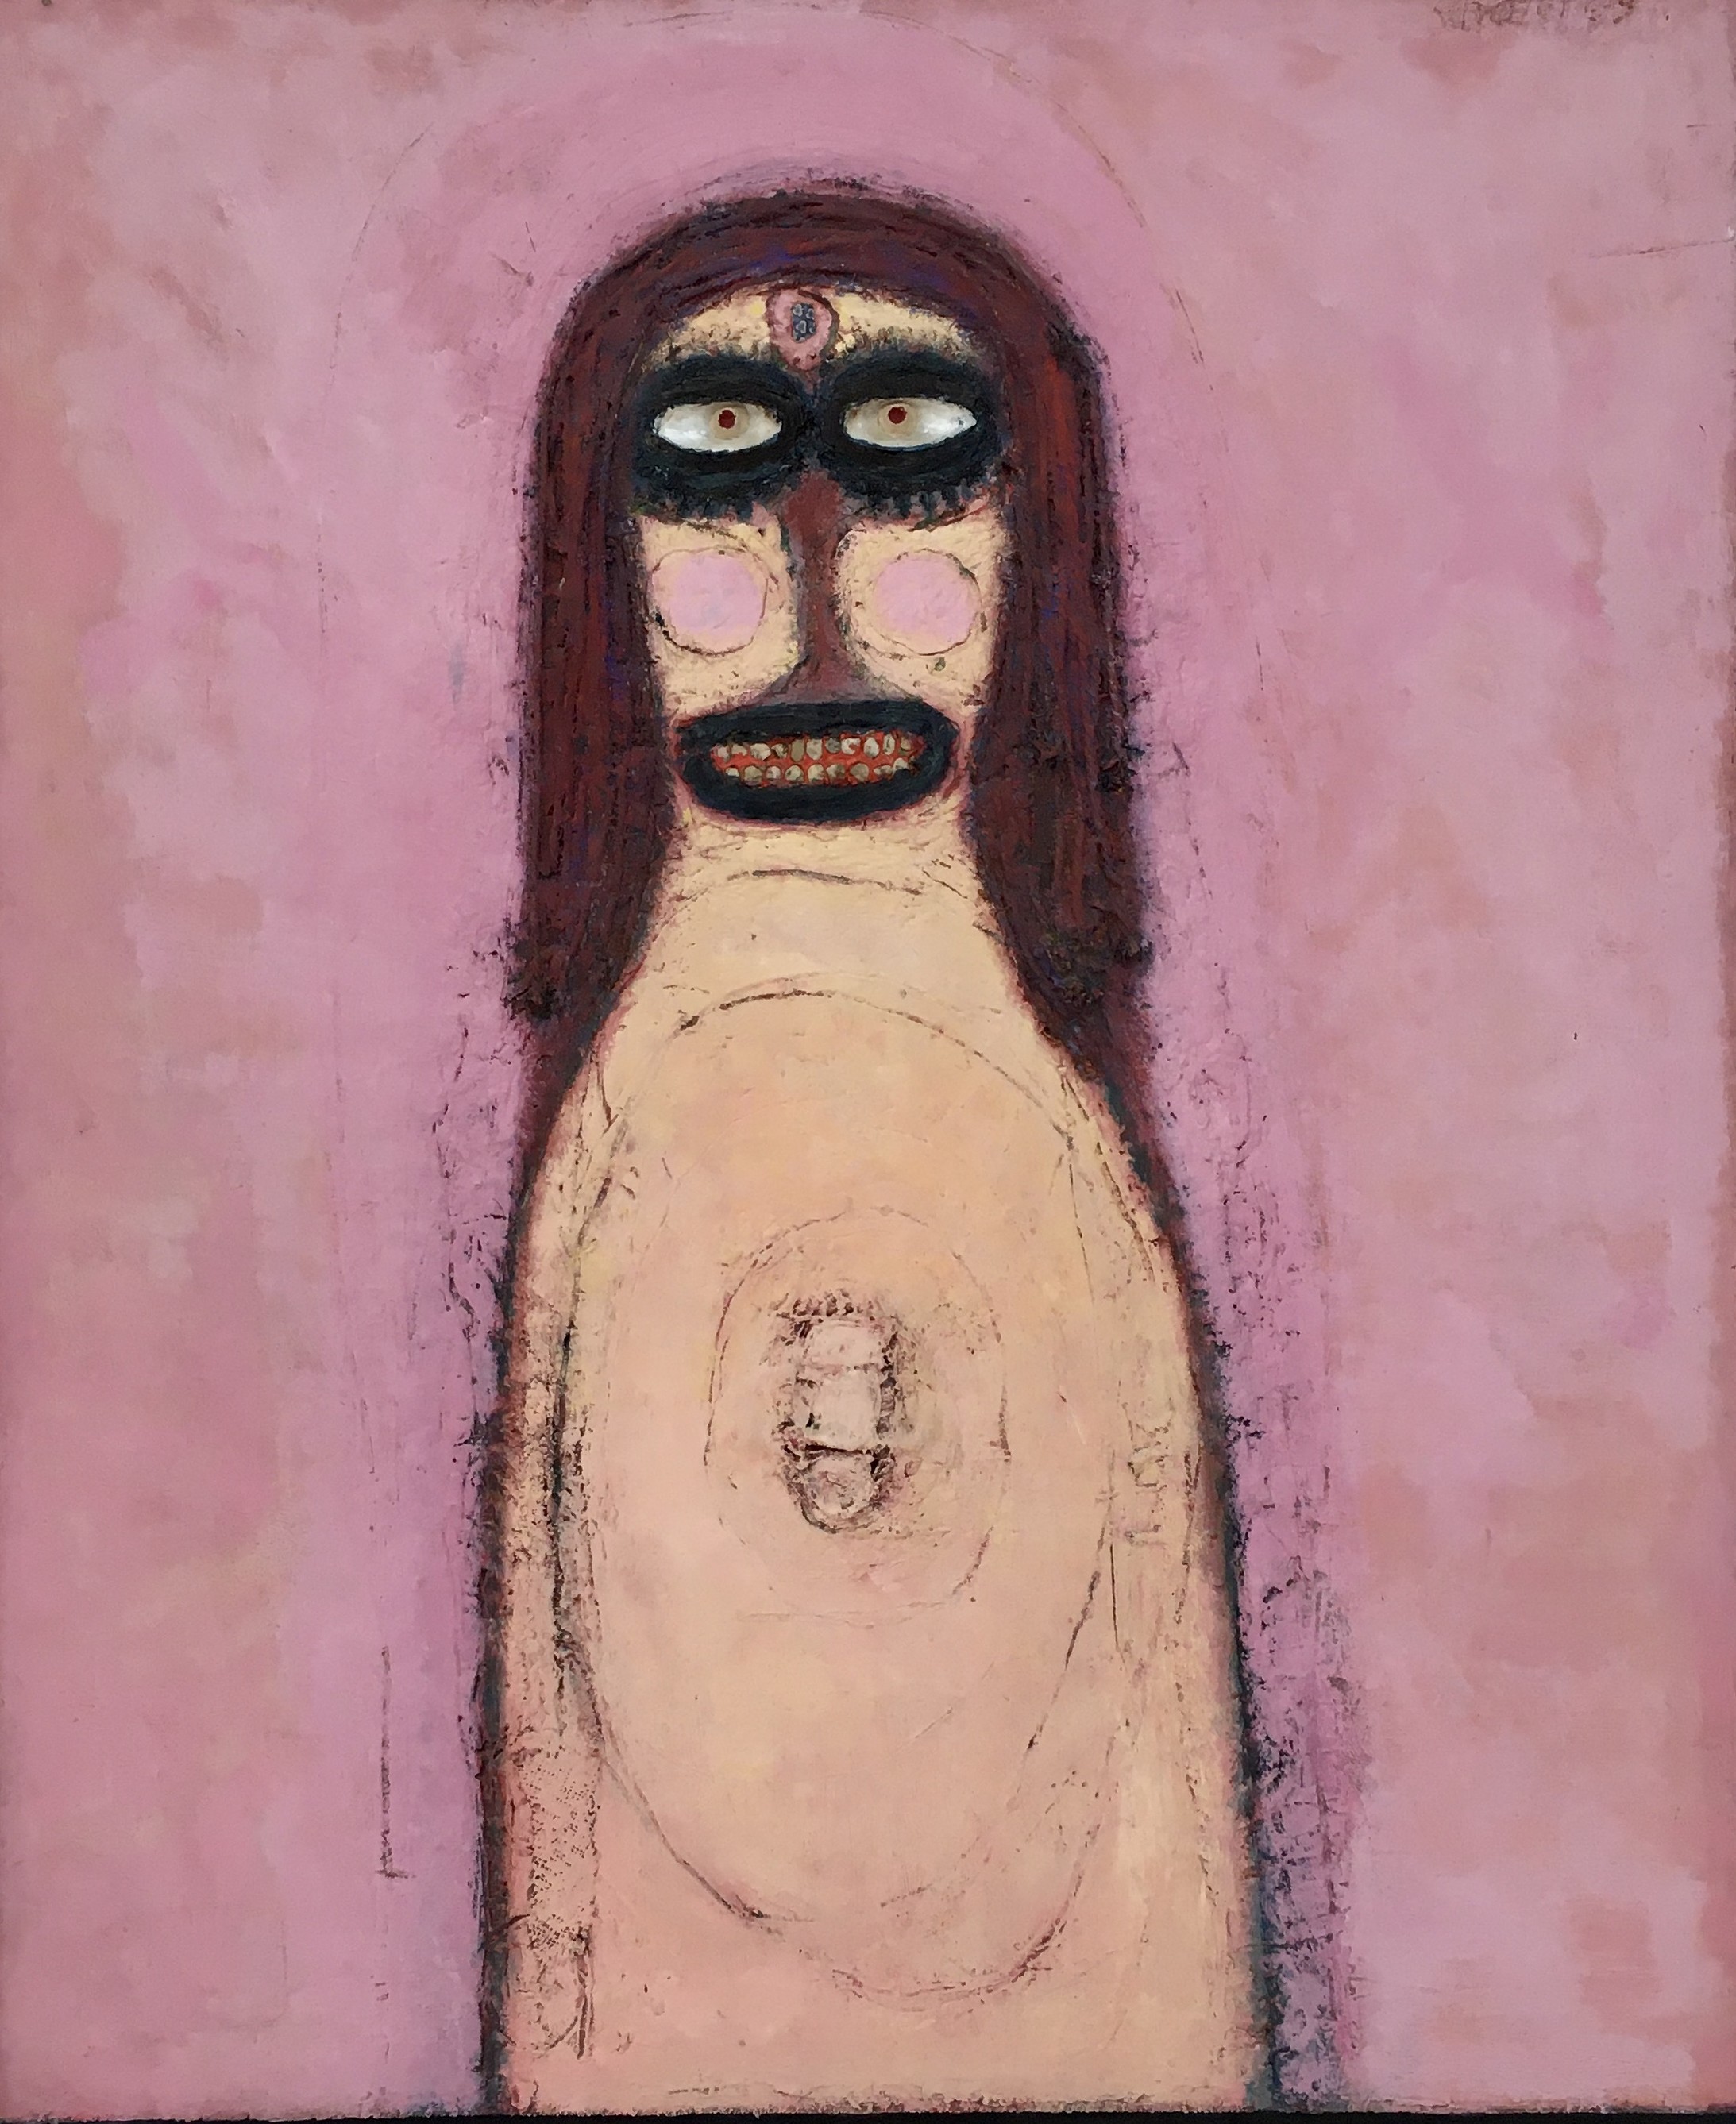 Hans Schärer: Madonna auf einem violetten Grund. Öl, Jute, Schnur, Muscheln, Keramik und Kreidestift auf Pavatex, 1969. Kunsthaus Zug


